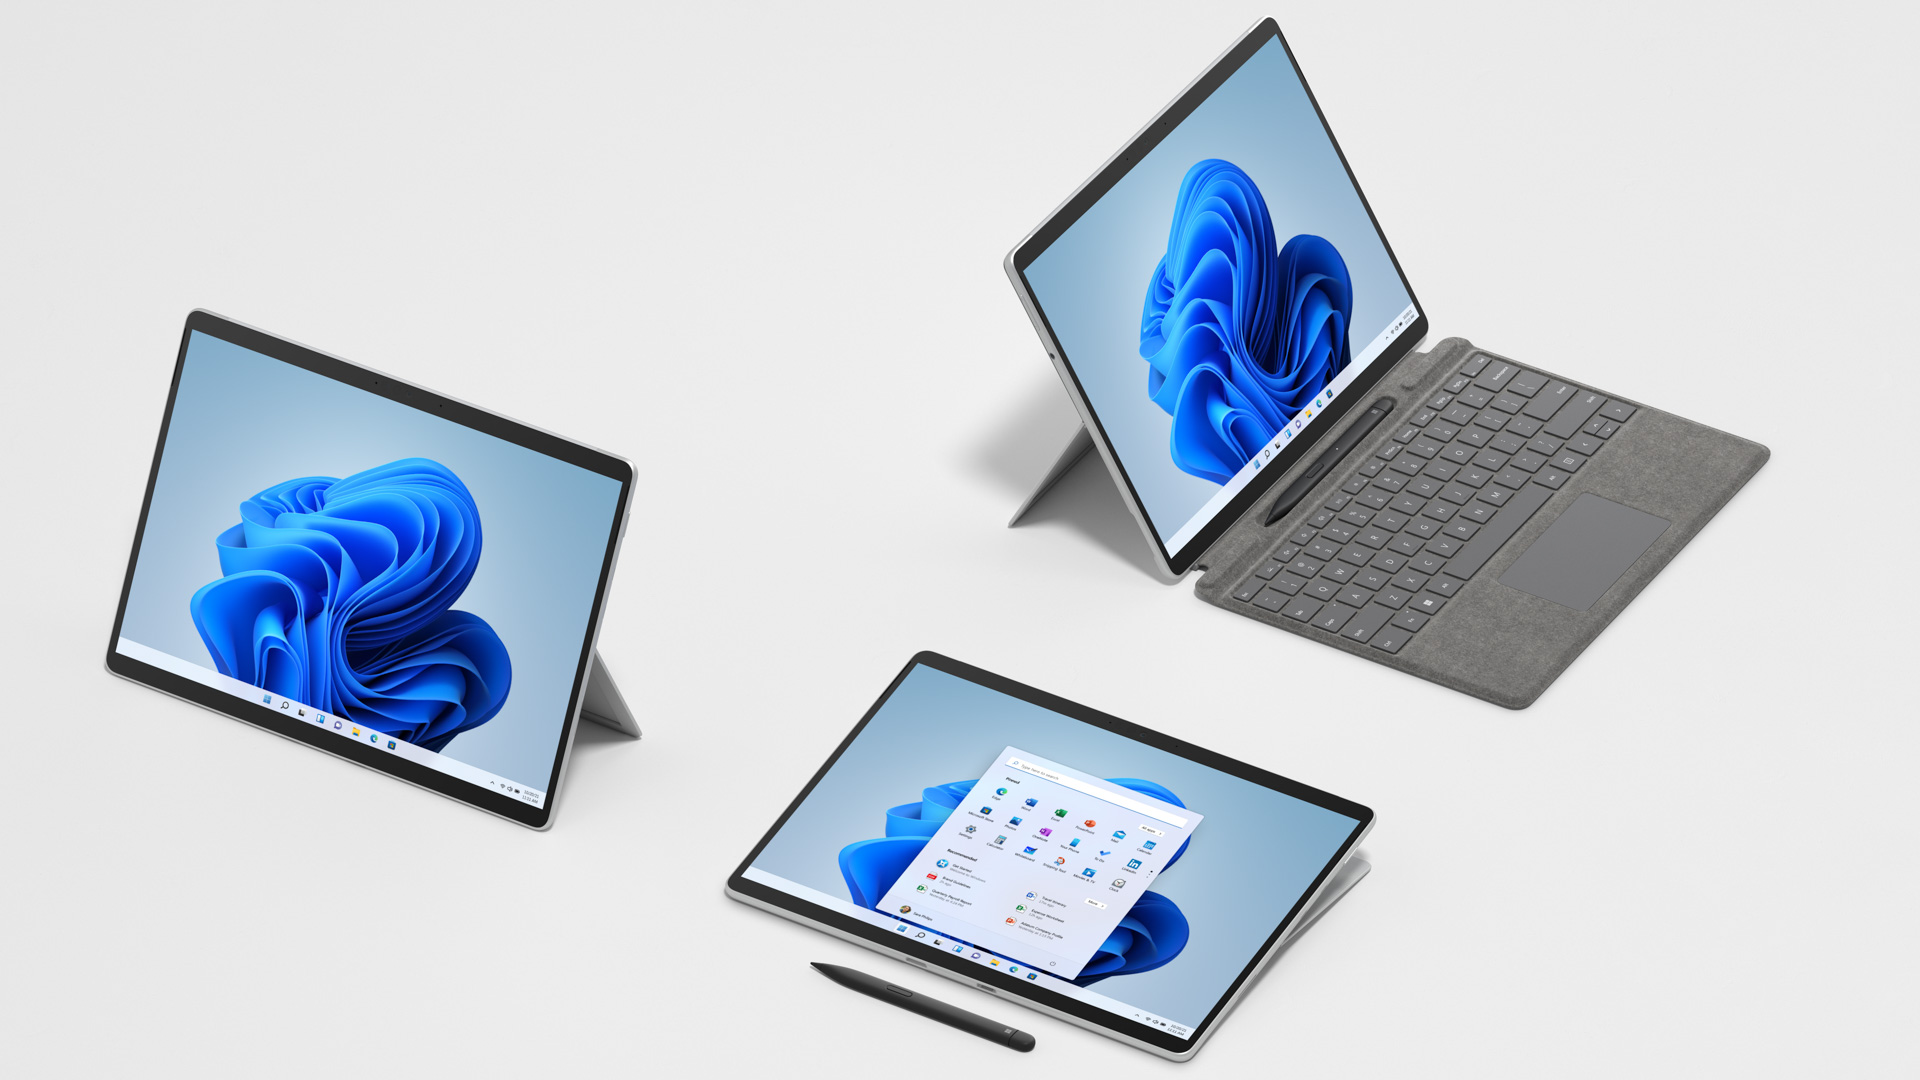 格安公式サイト  8 Pro Surface 【新品・未使用】マイクロソフト タブレット